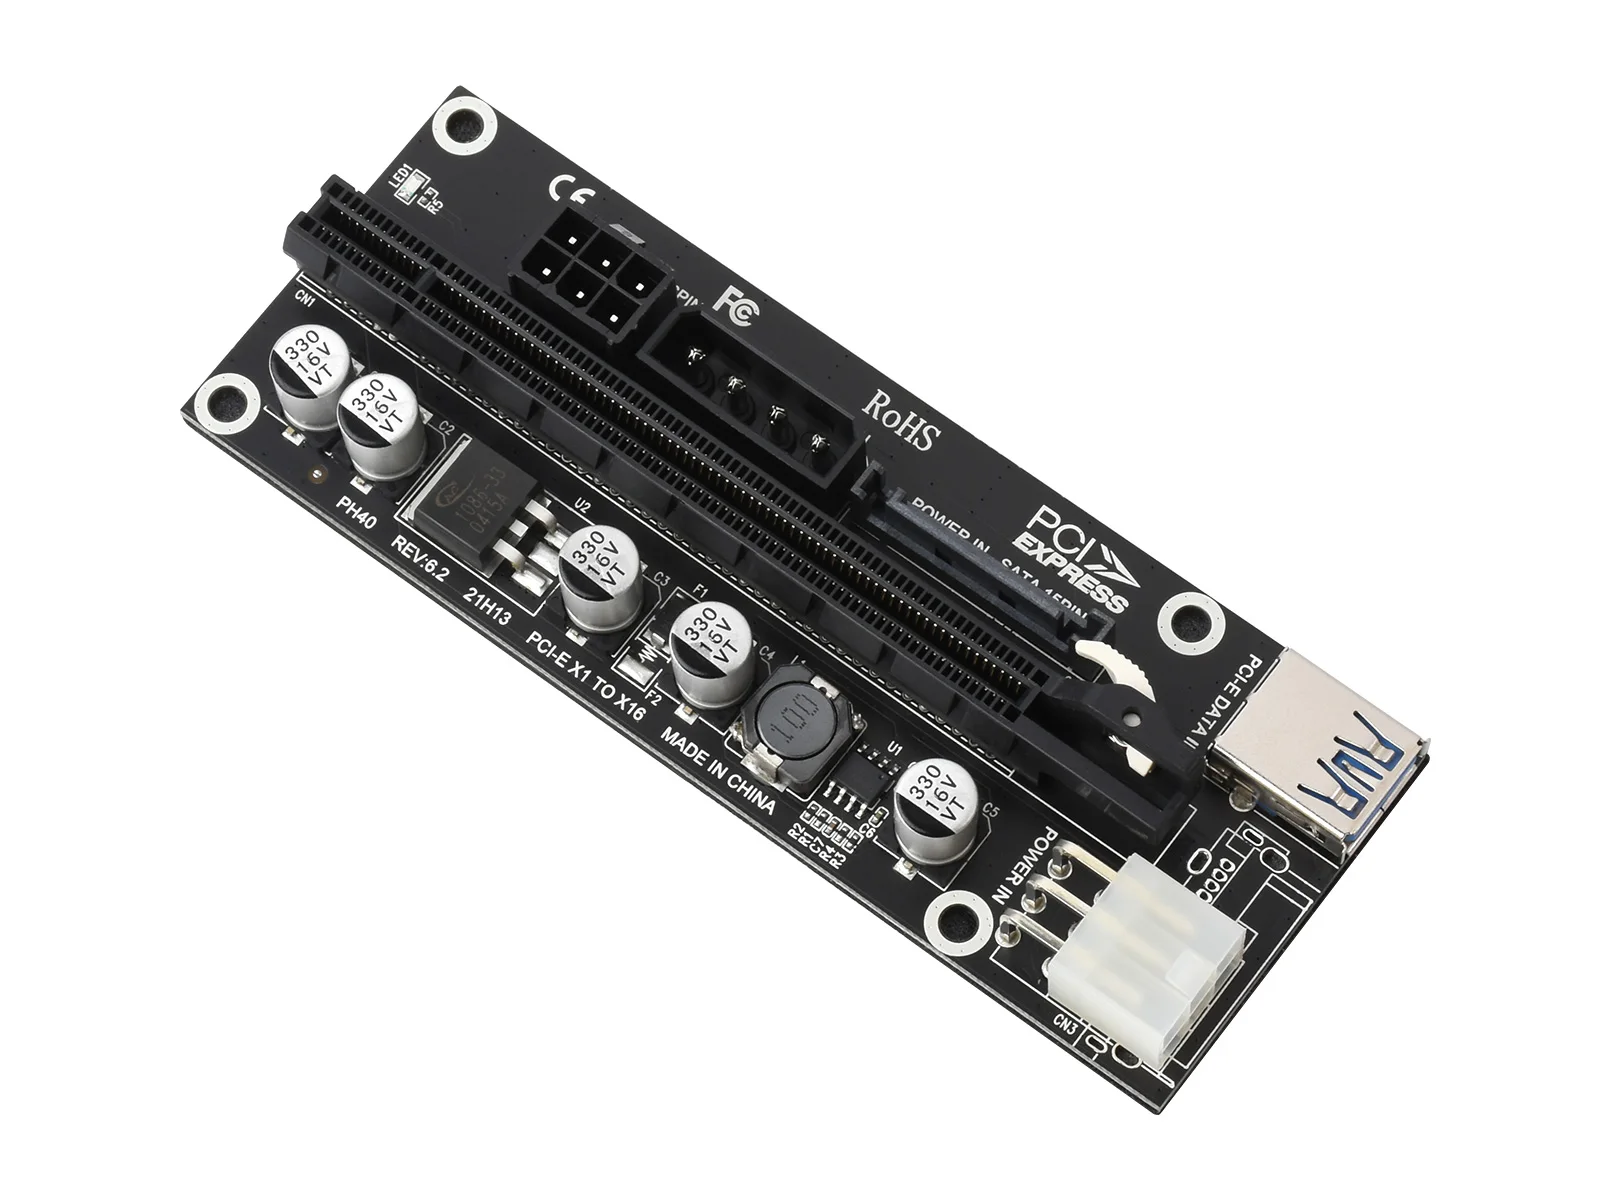 

PCIe X1 к PCIe X16 расширитель, используя M.2 к PCIe 4-Ch расширитель PCIe X16 порт, 6-контактный разъем